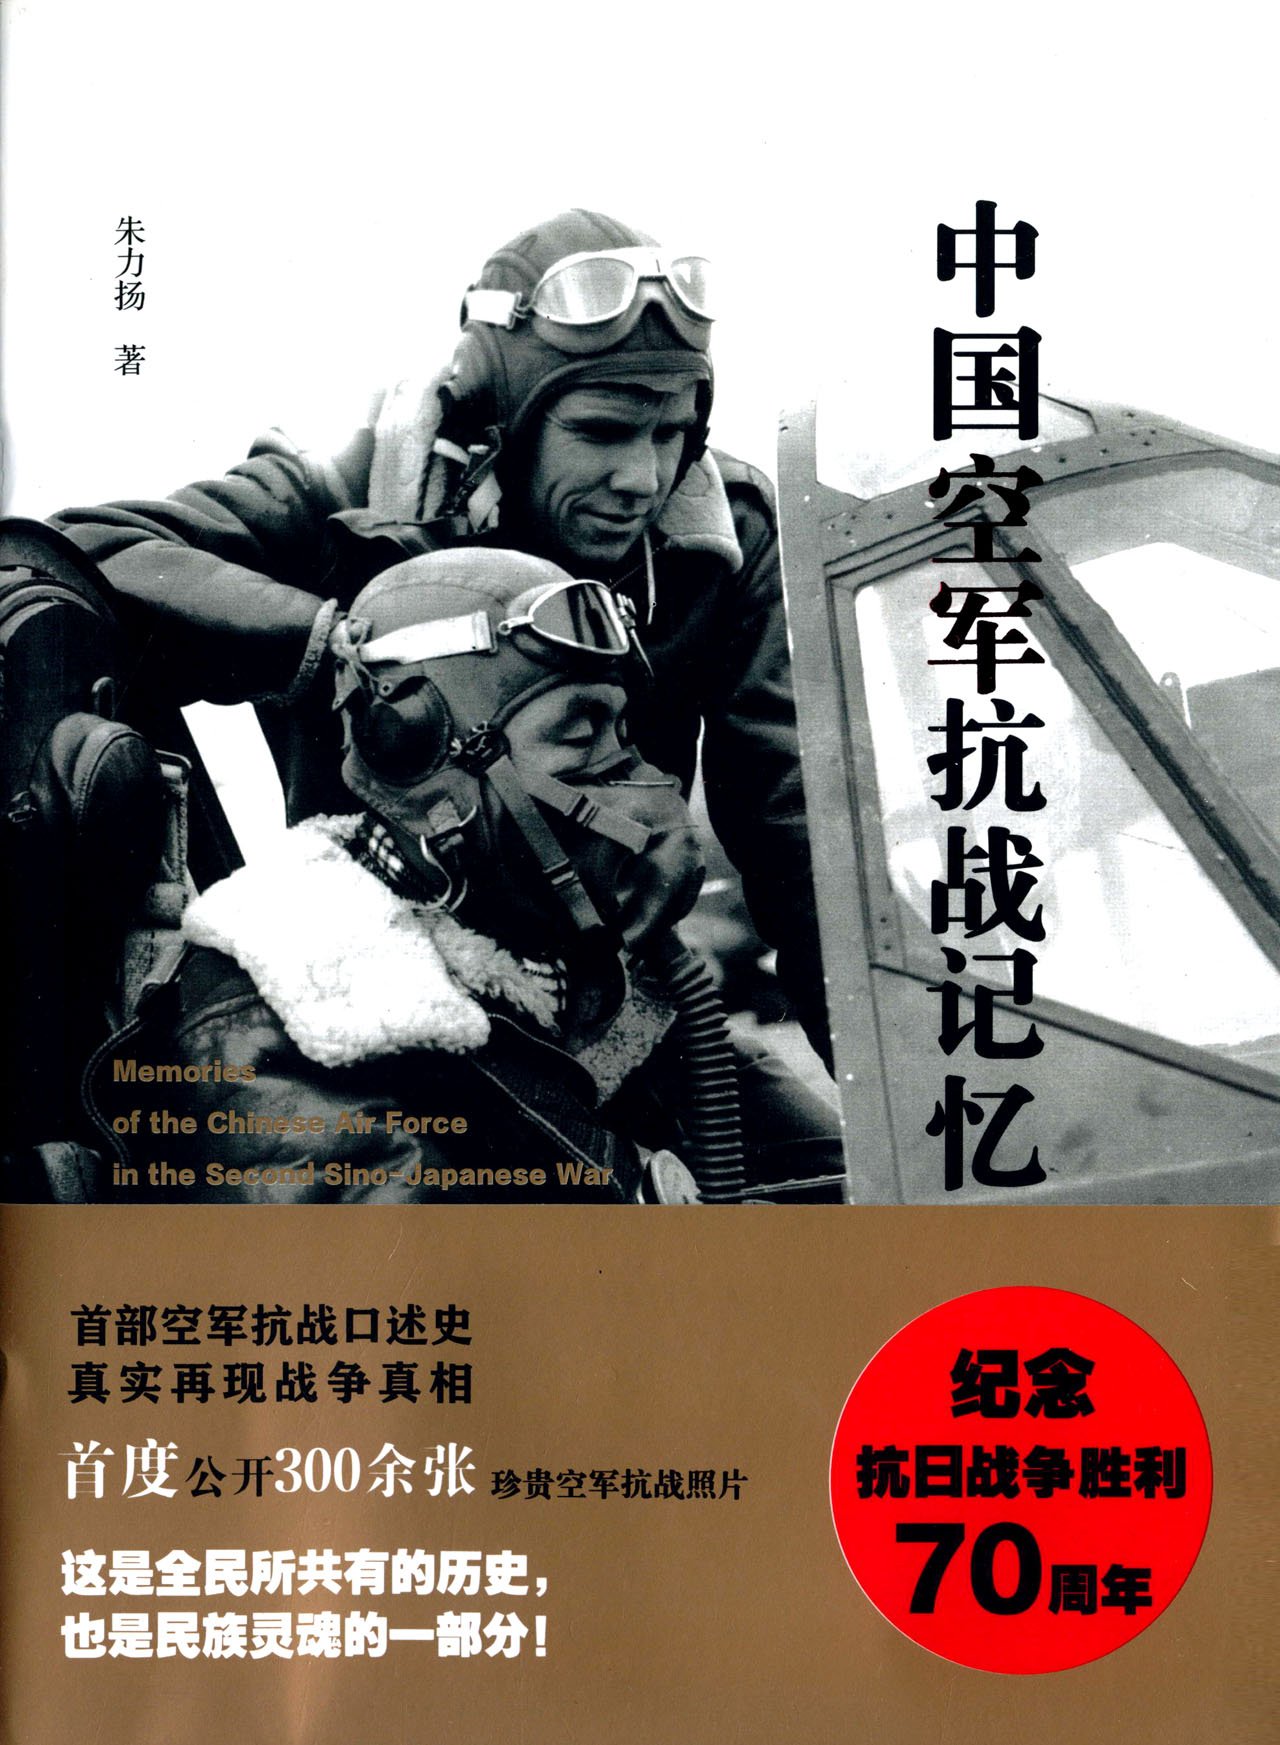 中国空军抗战记忆